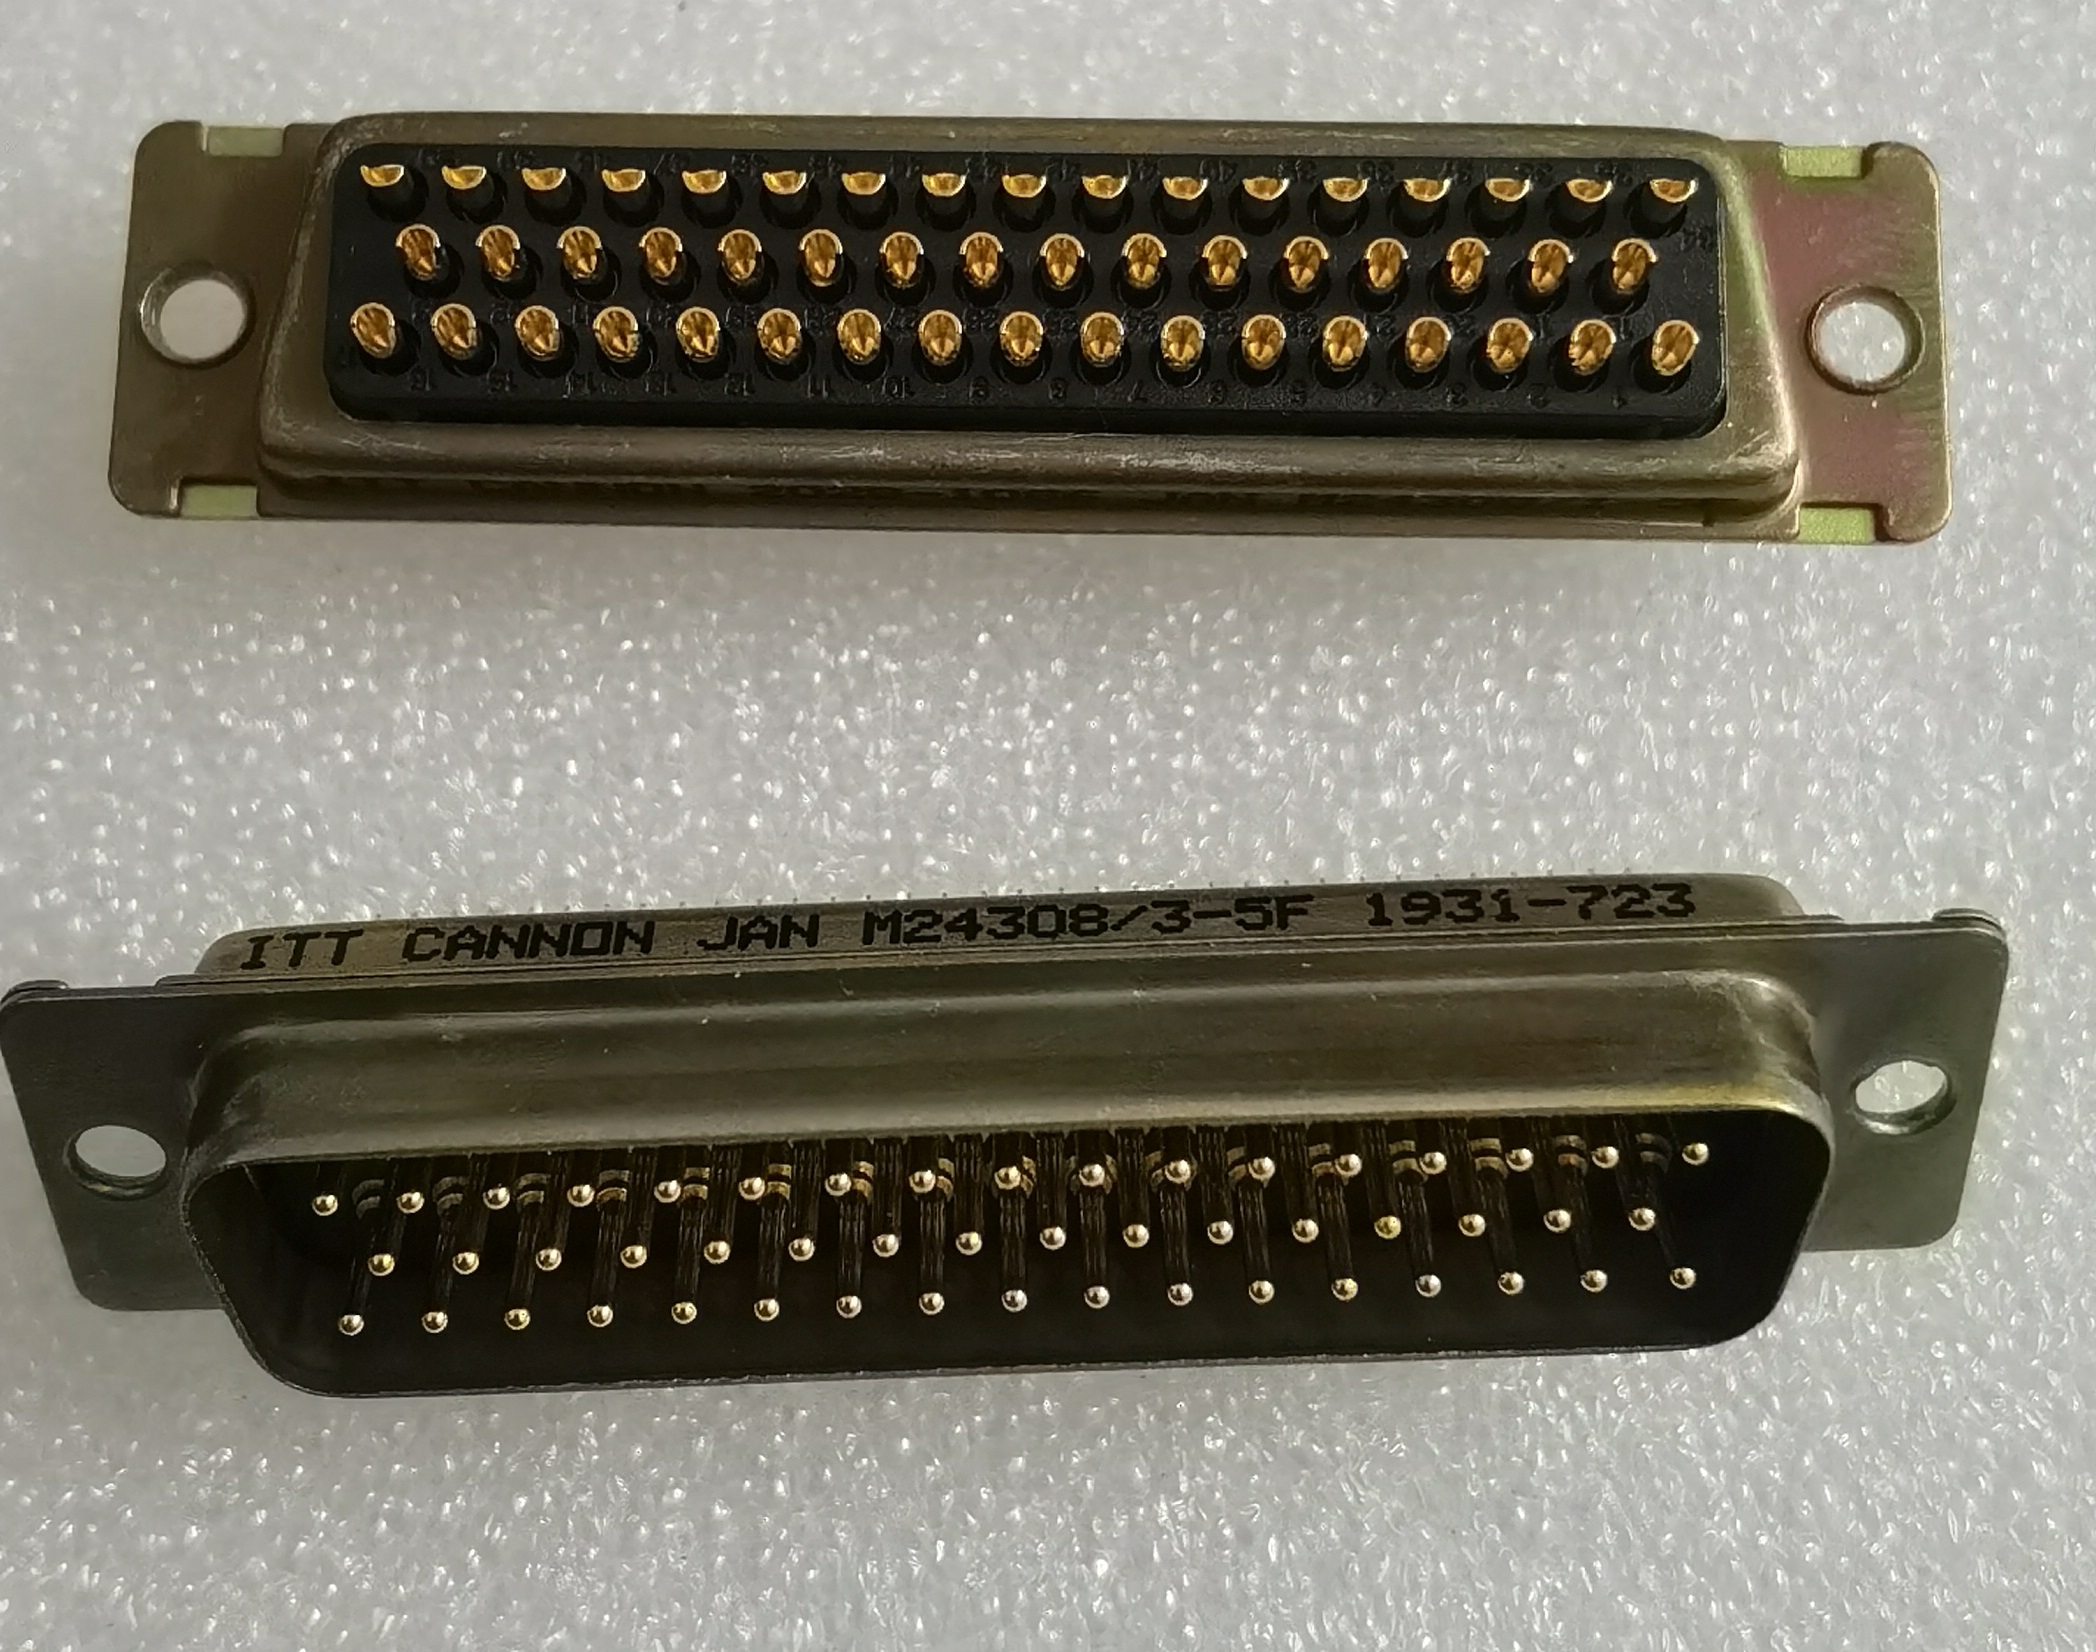 Rectangular male 50pin connector M243083-5F ITT connector